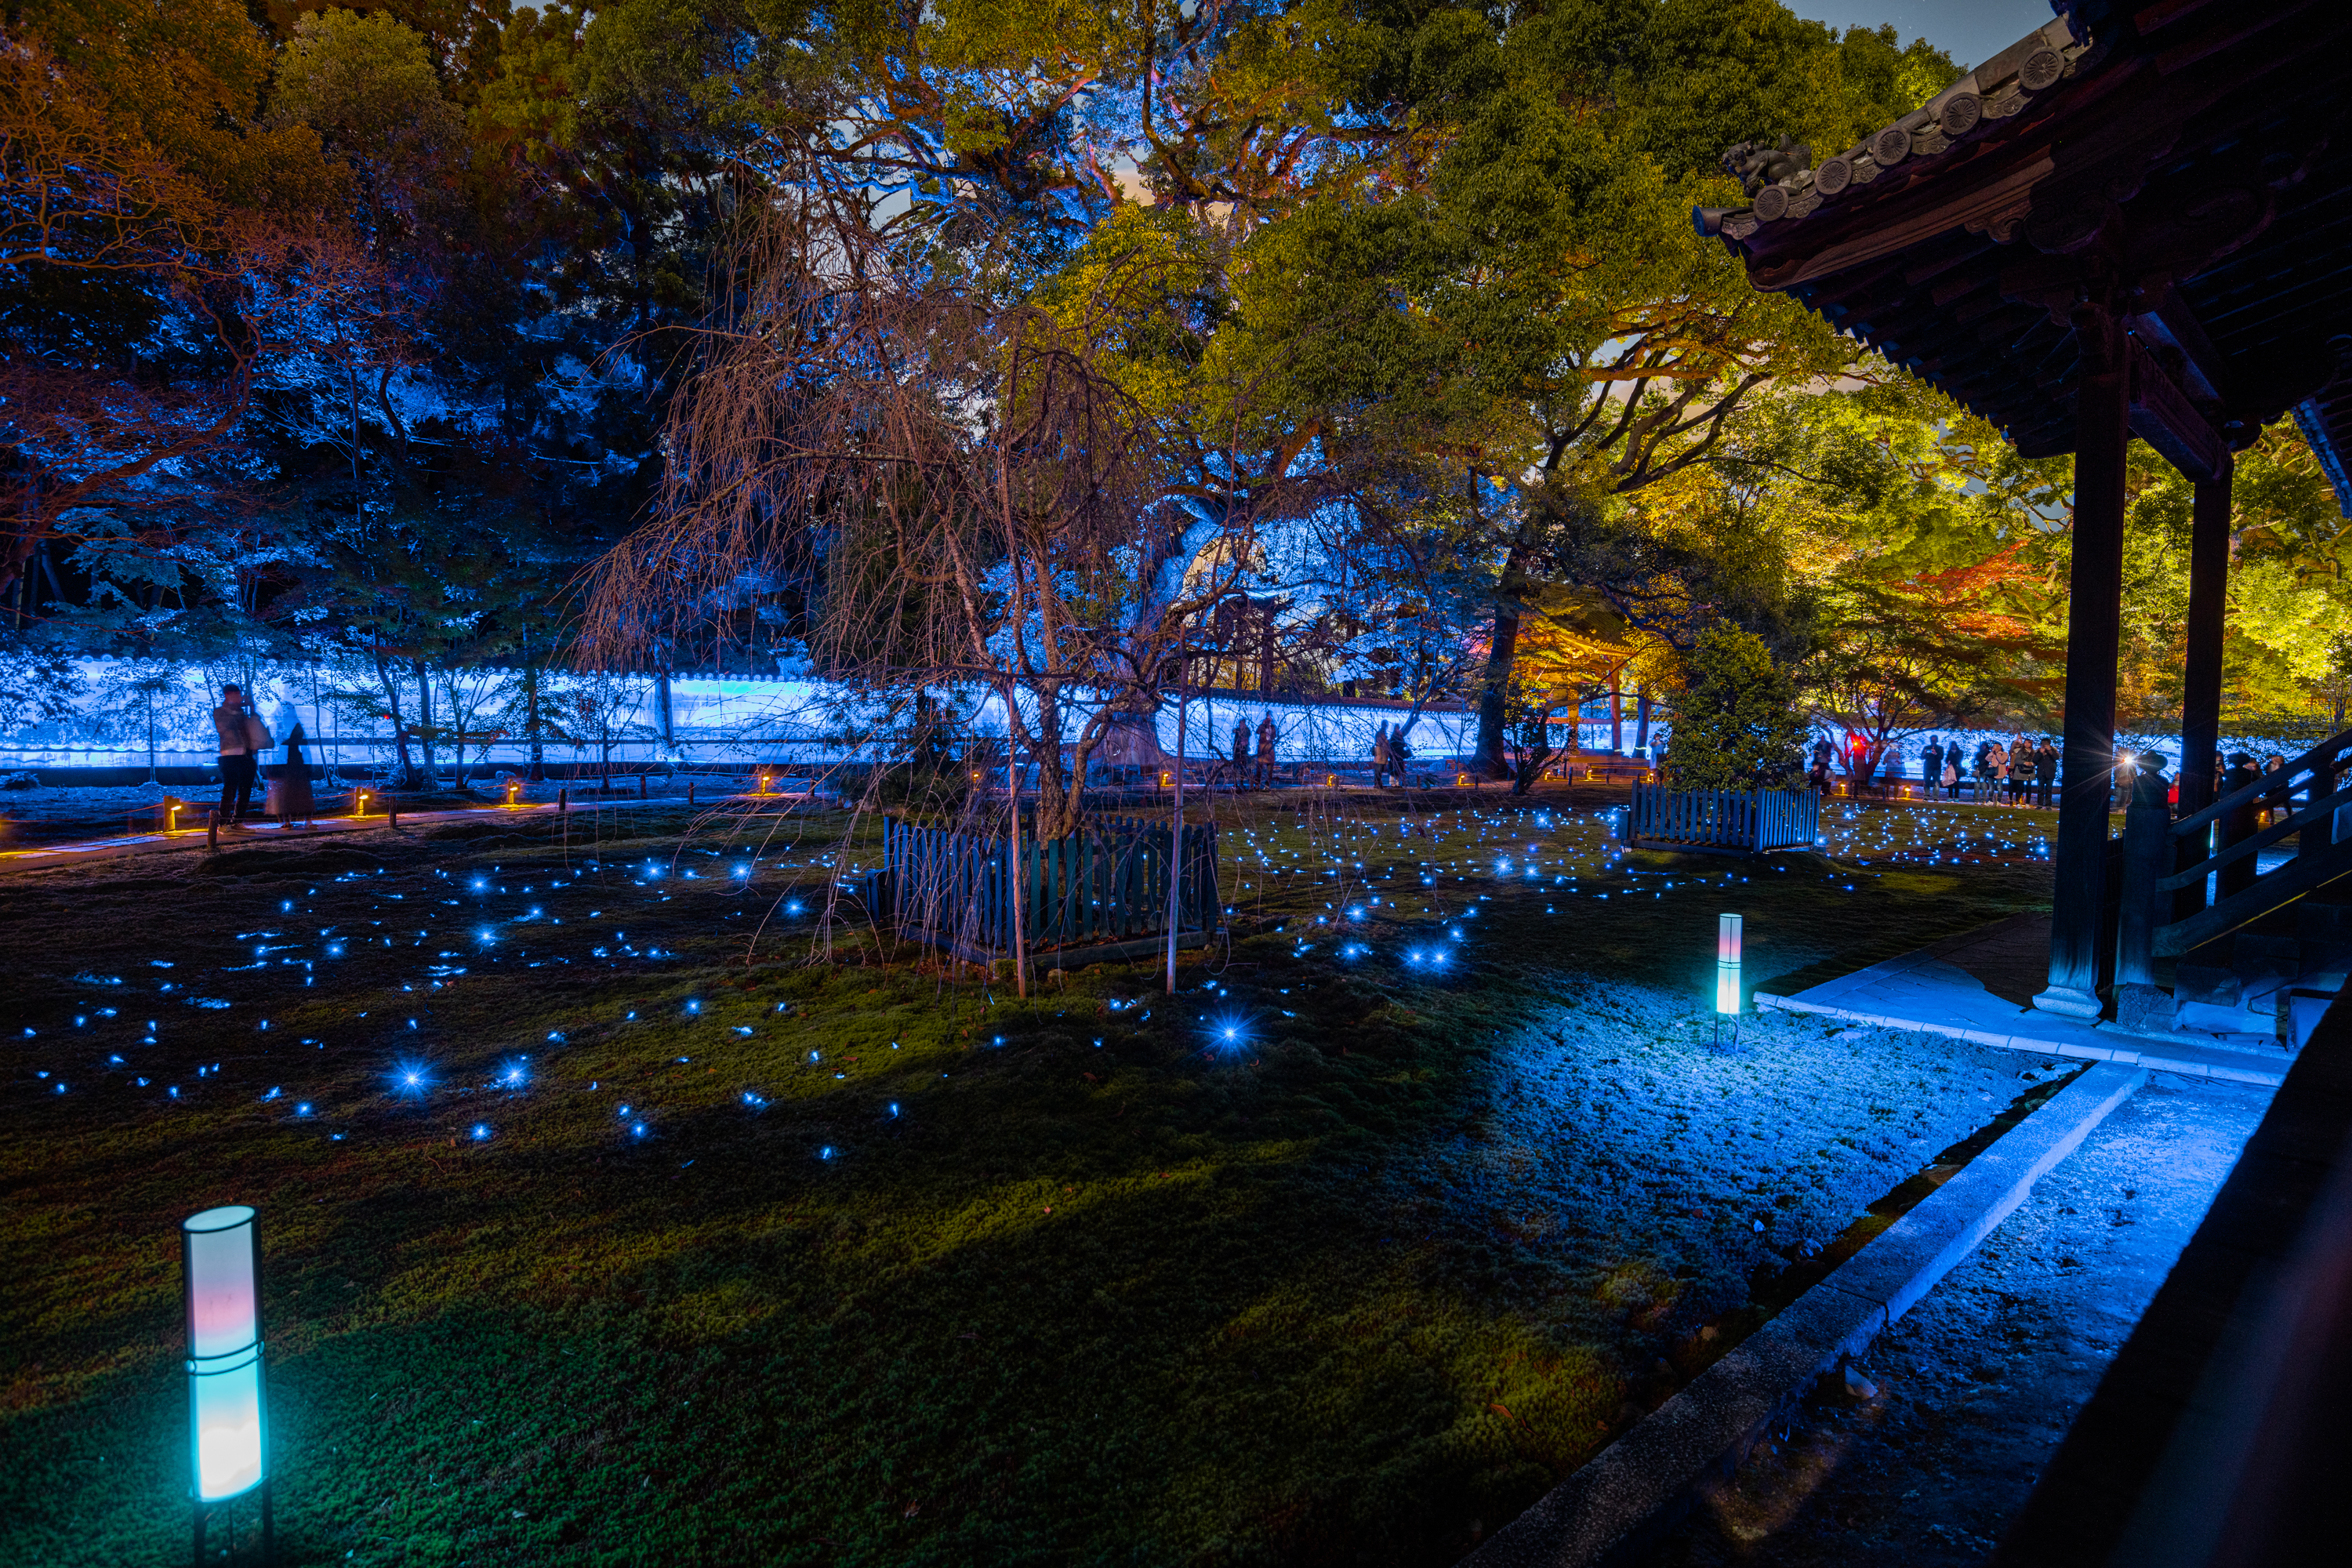 NIKON-CORPORATION_NIKON-D850_3267928818-3268035838_22173 京都  青蓮院門跡 ( 京都の秋、ライトアップが美しいおすすめの写真スポット!撮影した写真の紹介、アクセス情報や交通手段など!)